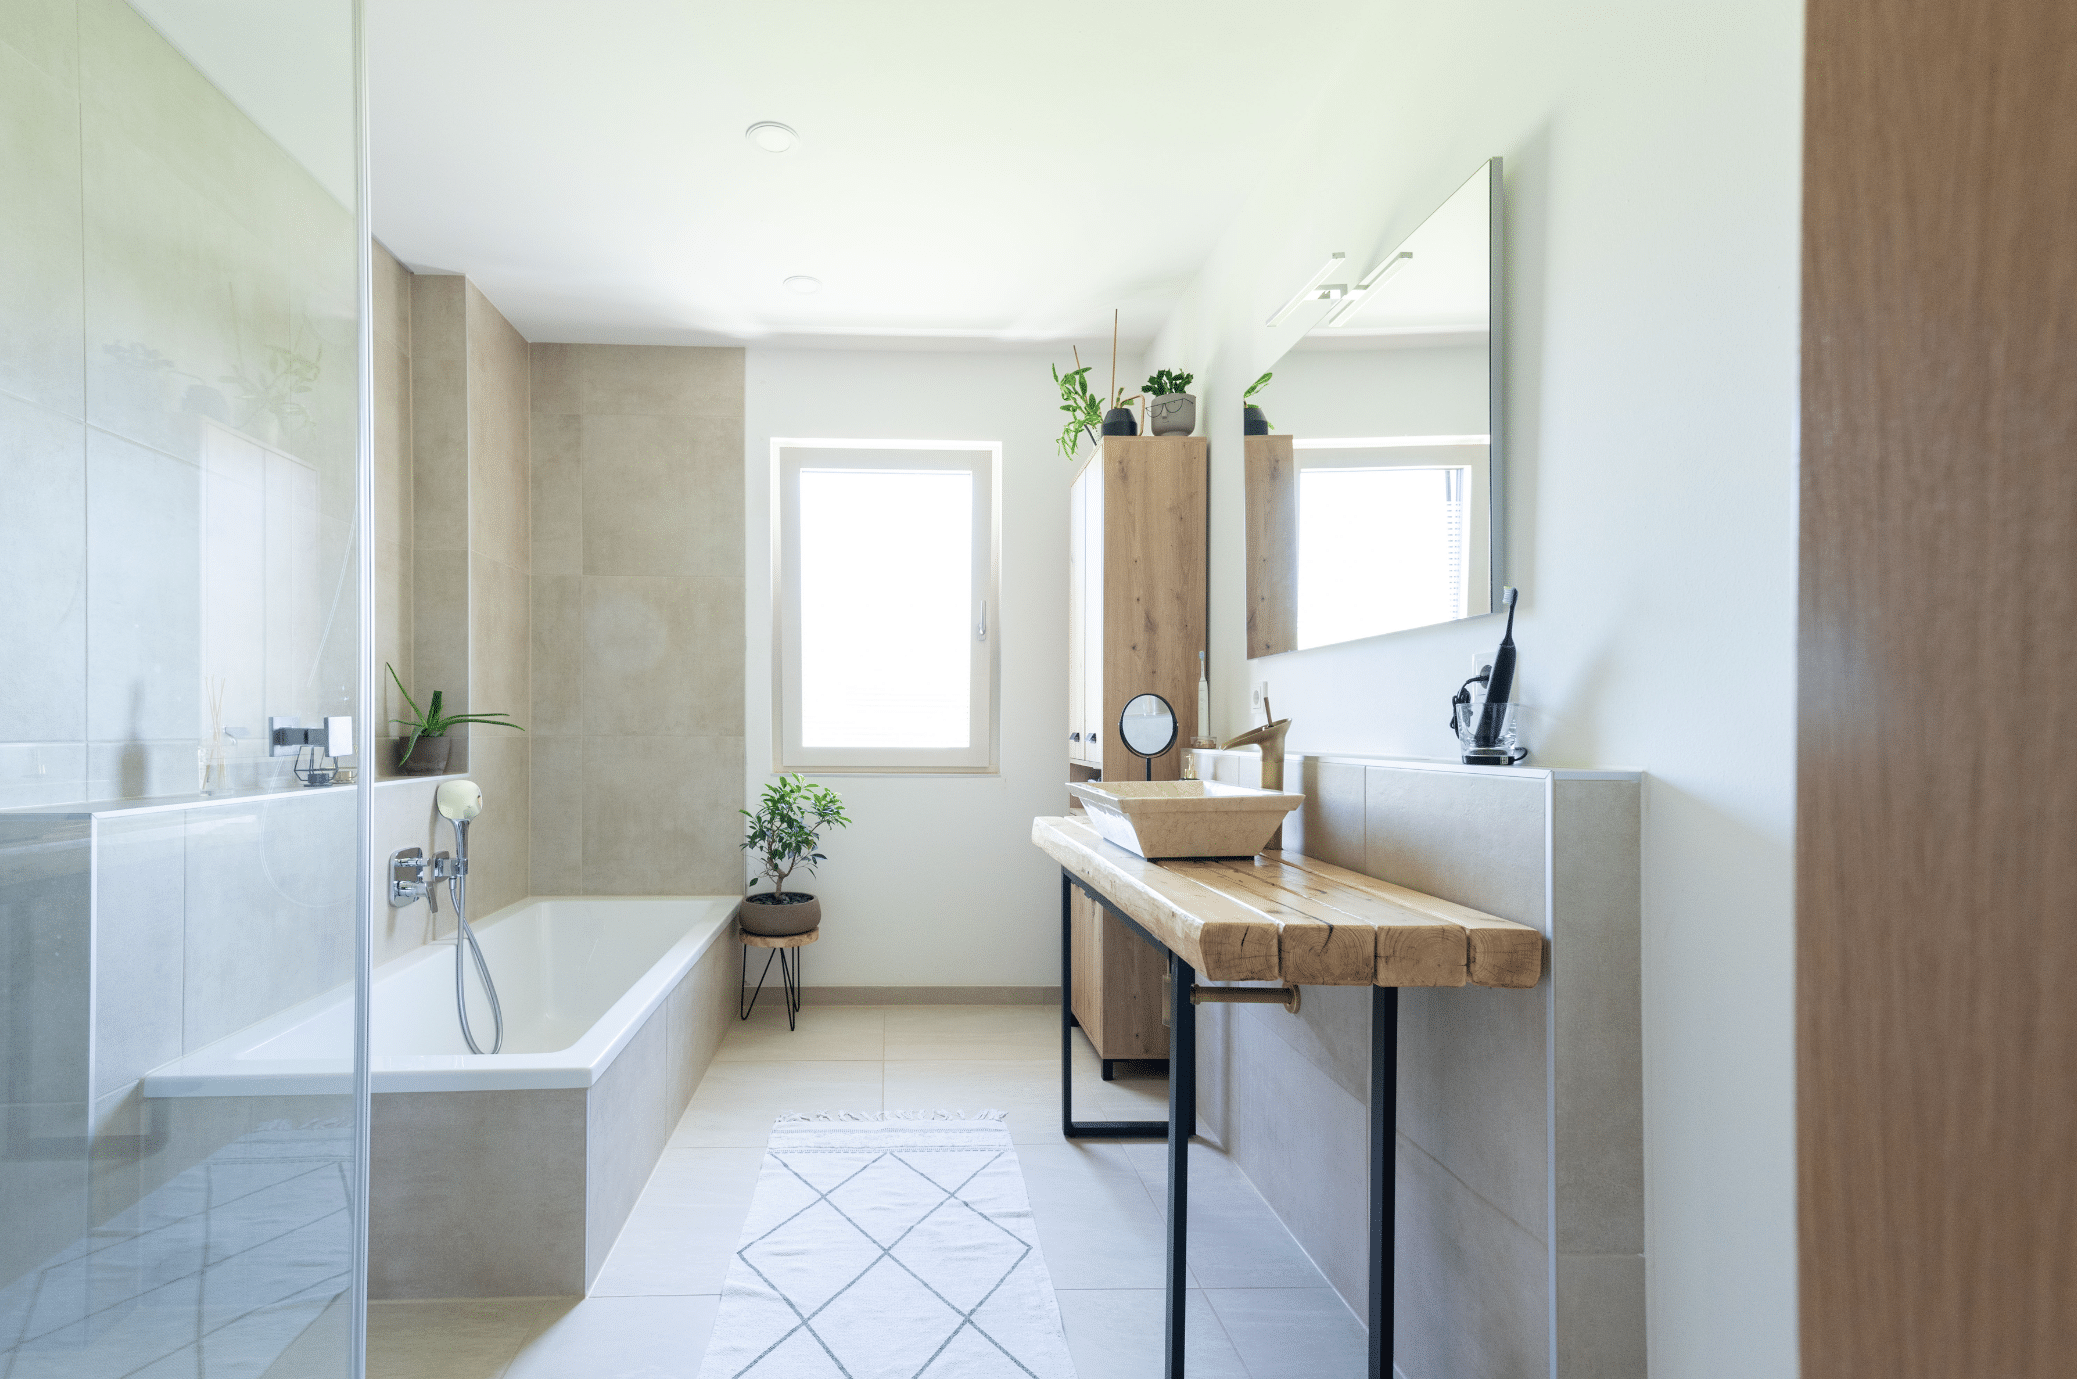 Hartl Haus zeigt ein hell gefliestes Badezimmer mit eckiger Badewanne, silbernen Armaturen und einen Waschtisch aus Holz und Hochschrank.